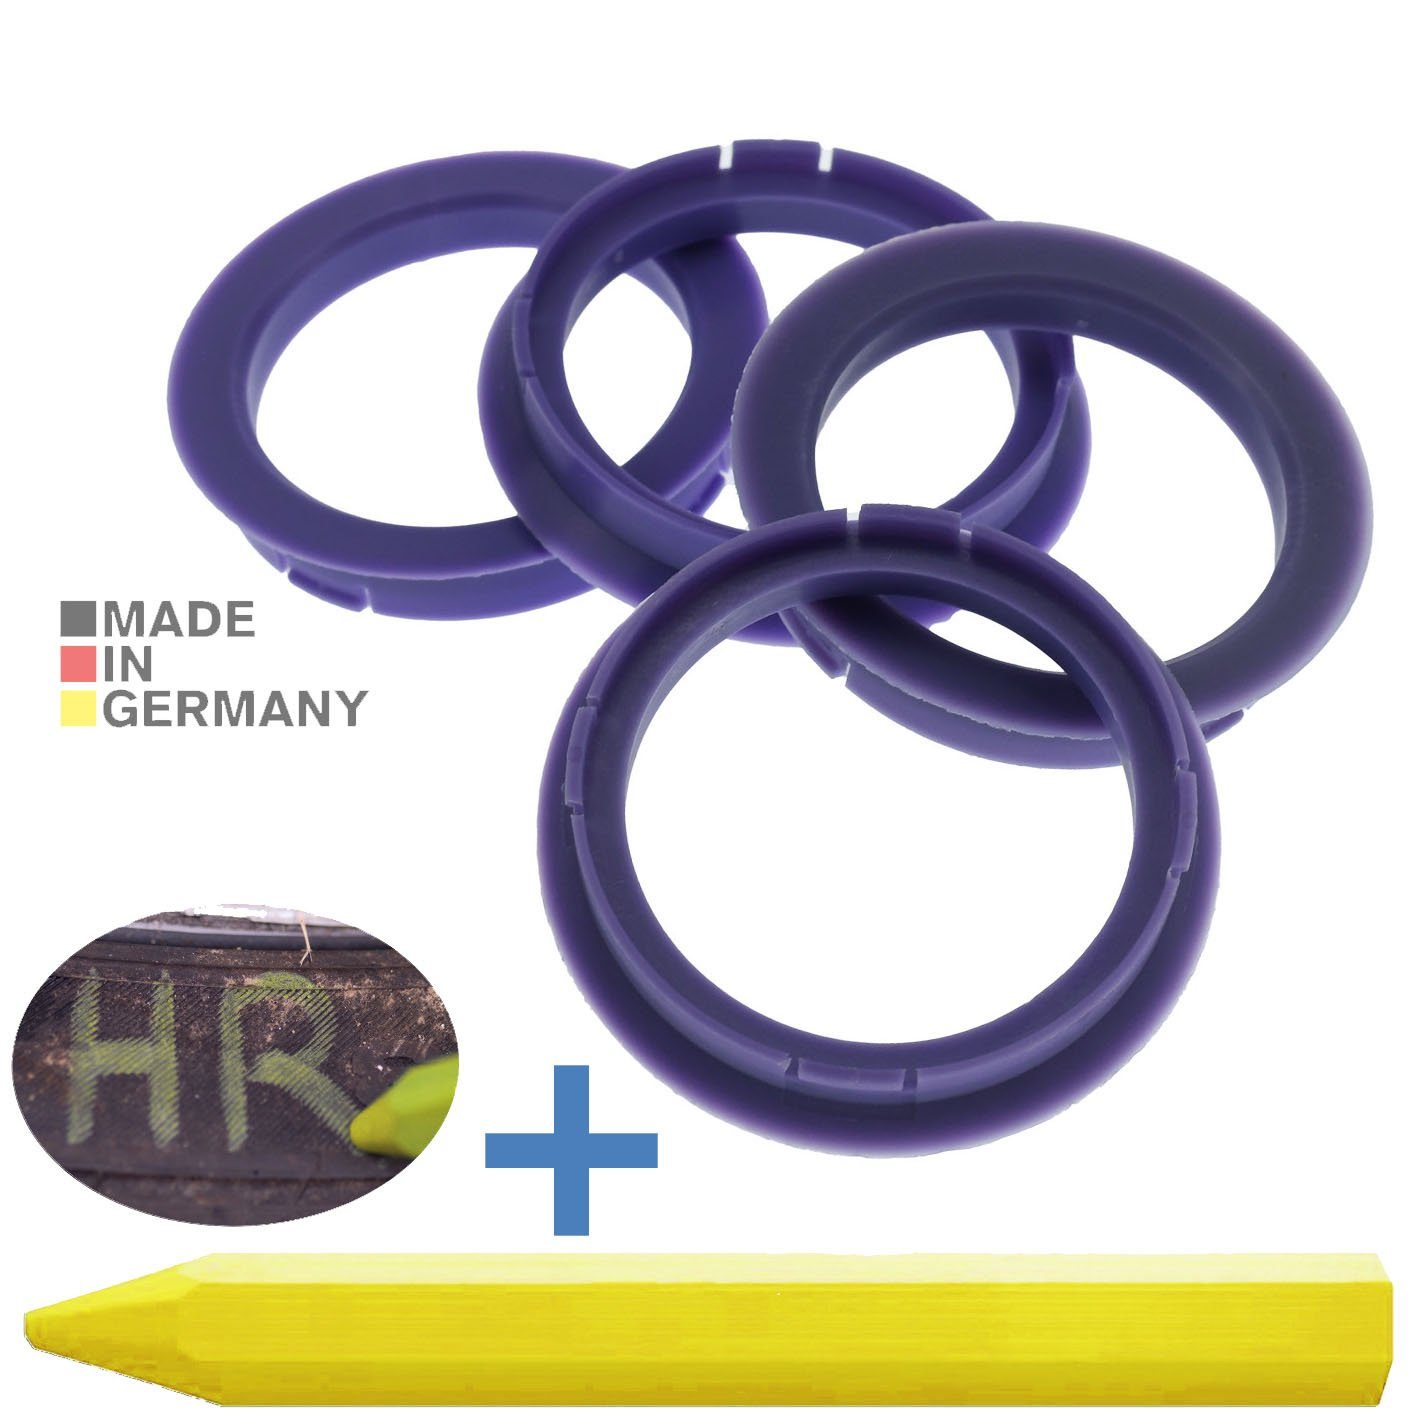 RKC Reifenstift 4X Zentrierringe Lila Felgen Ringe + 1x Reifen Kreide Fett Stift, Maße: 72,5 x 60,1 mm